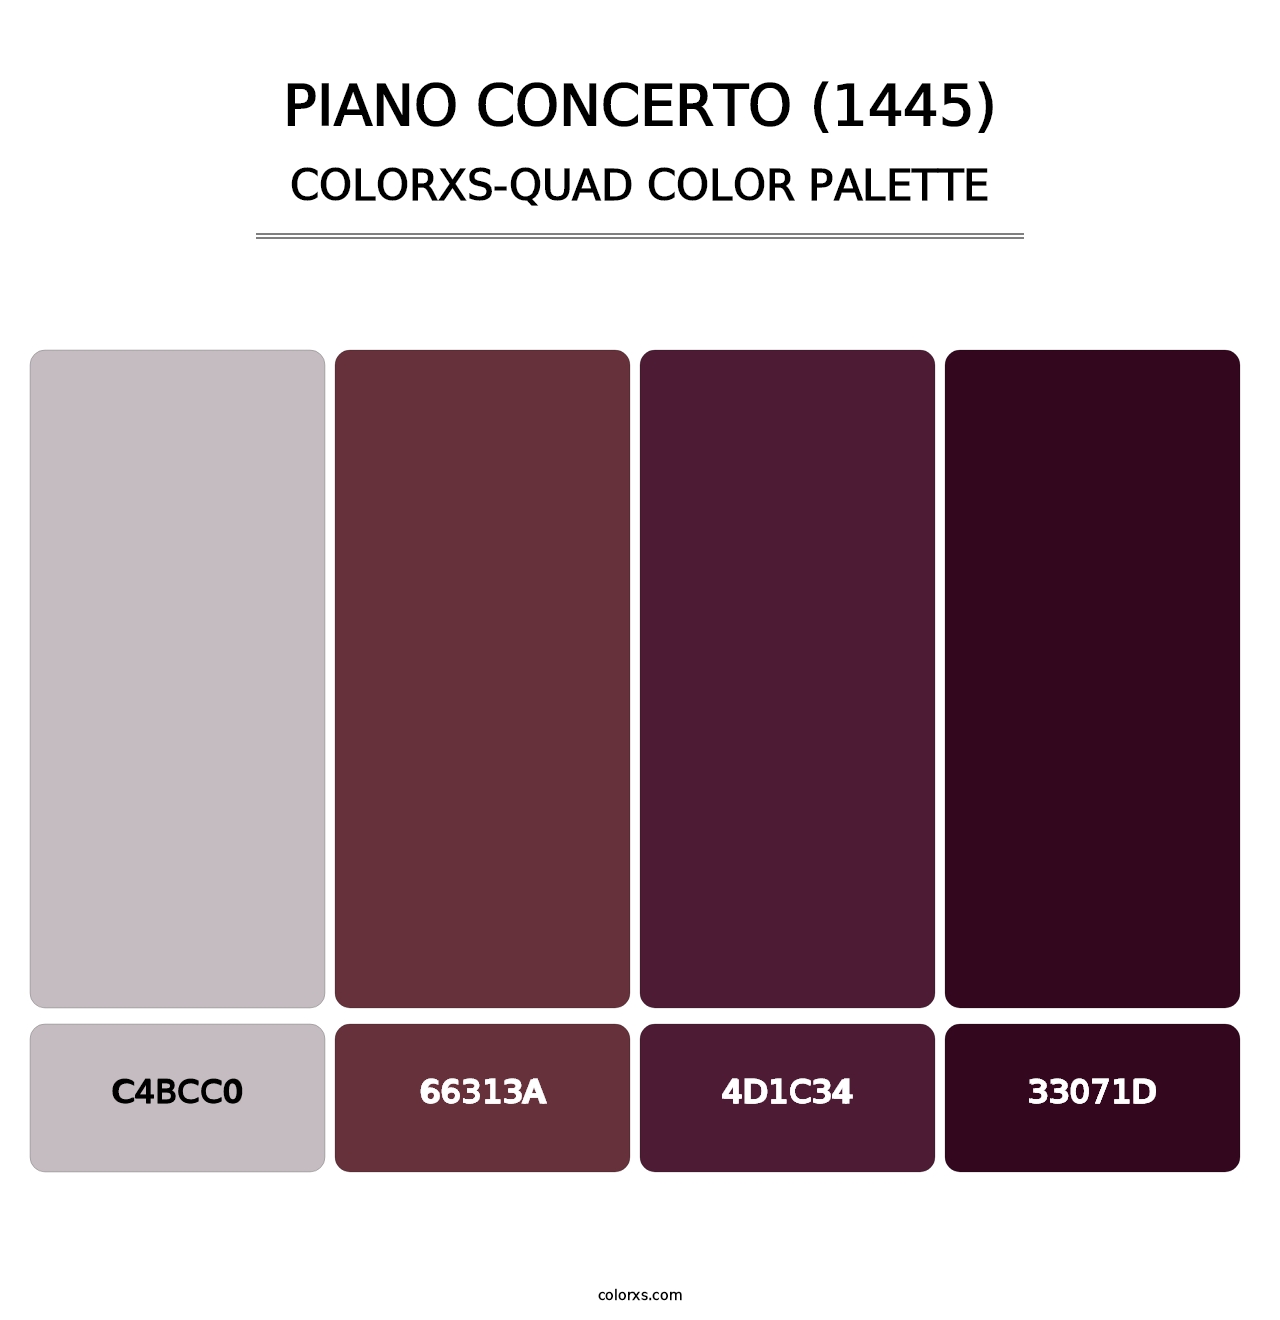 Piano Concerto (1445) - Colorxs Quad Palette